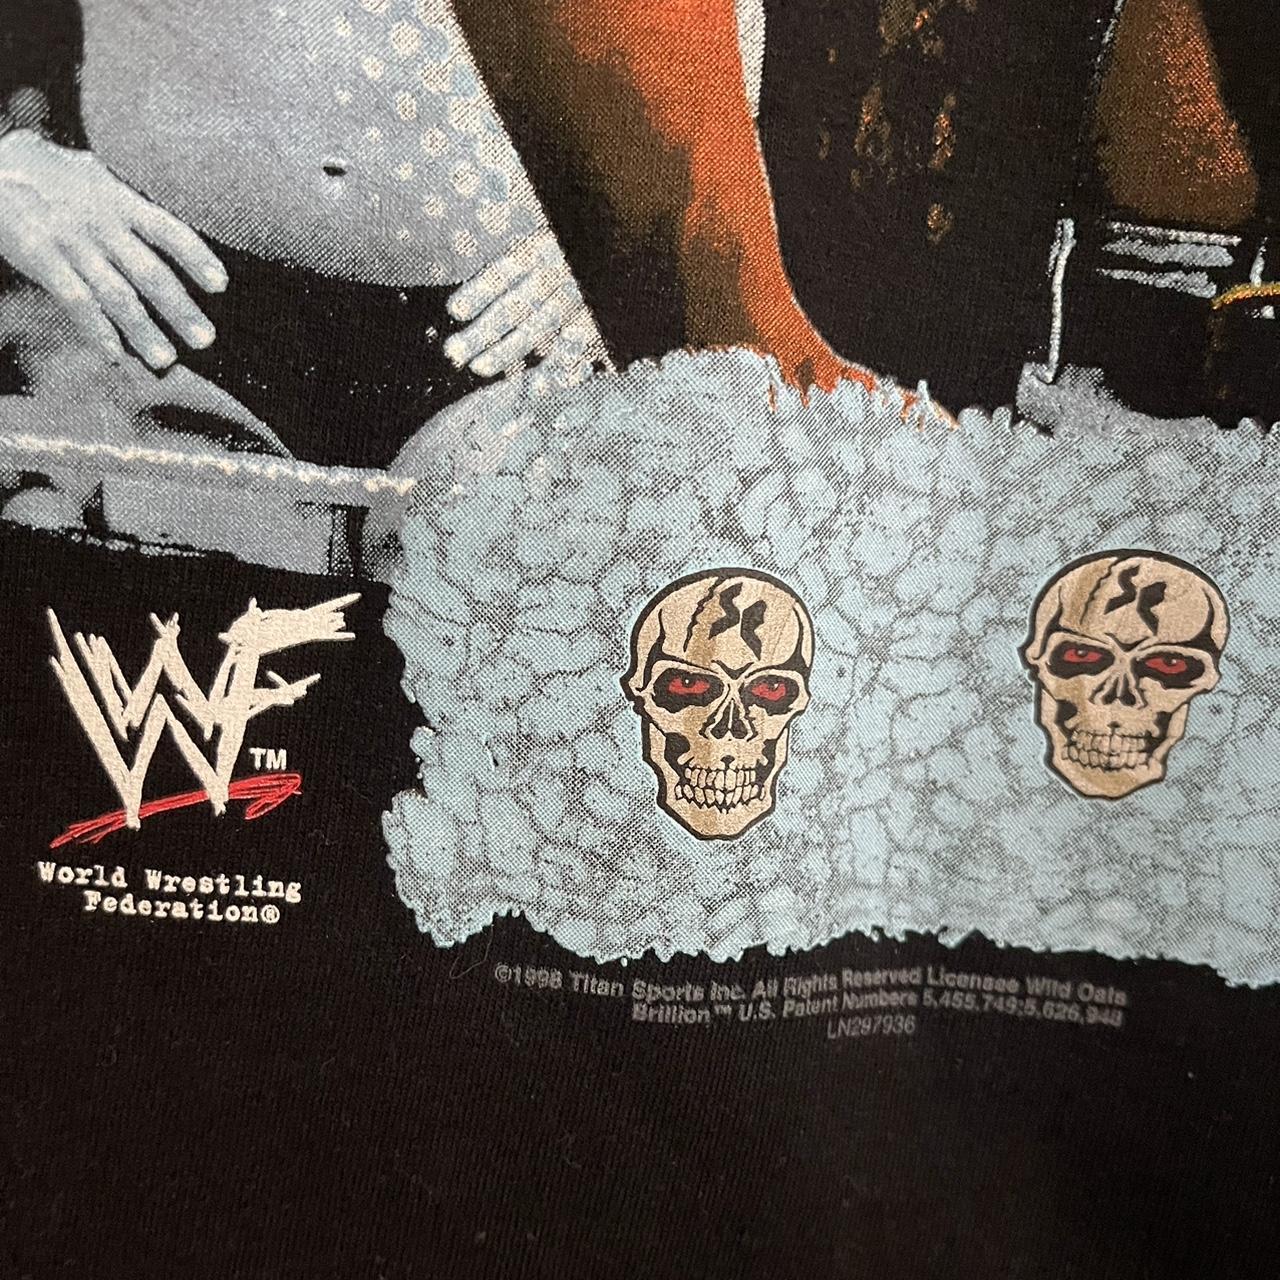 Stone Cold Steve Austin WWE wrestle skull illustration shirt